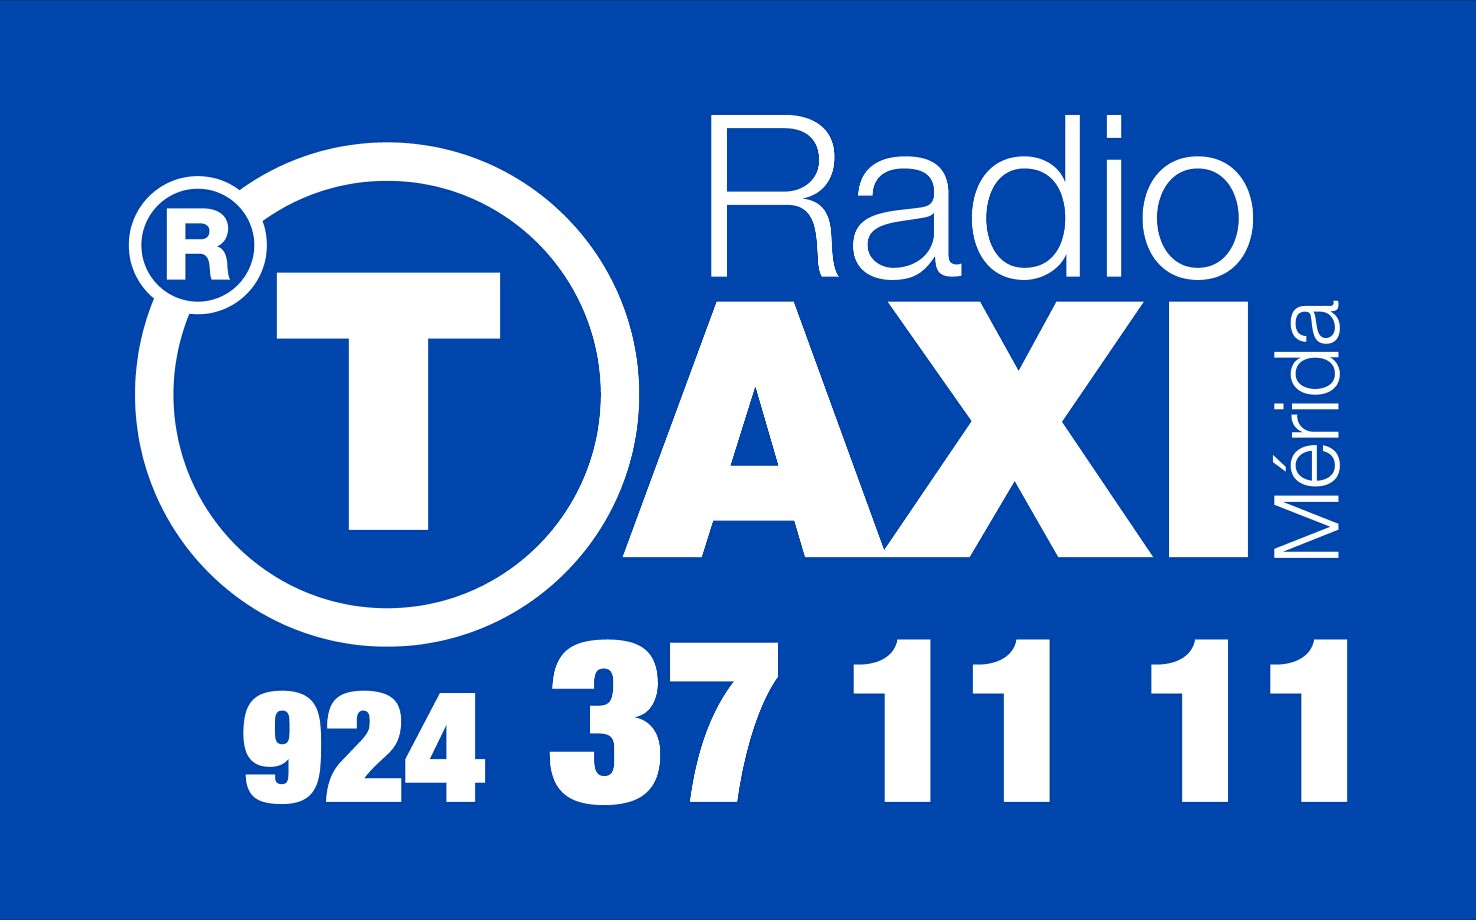 Images Radio Taxi Mérida